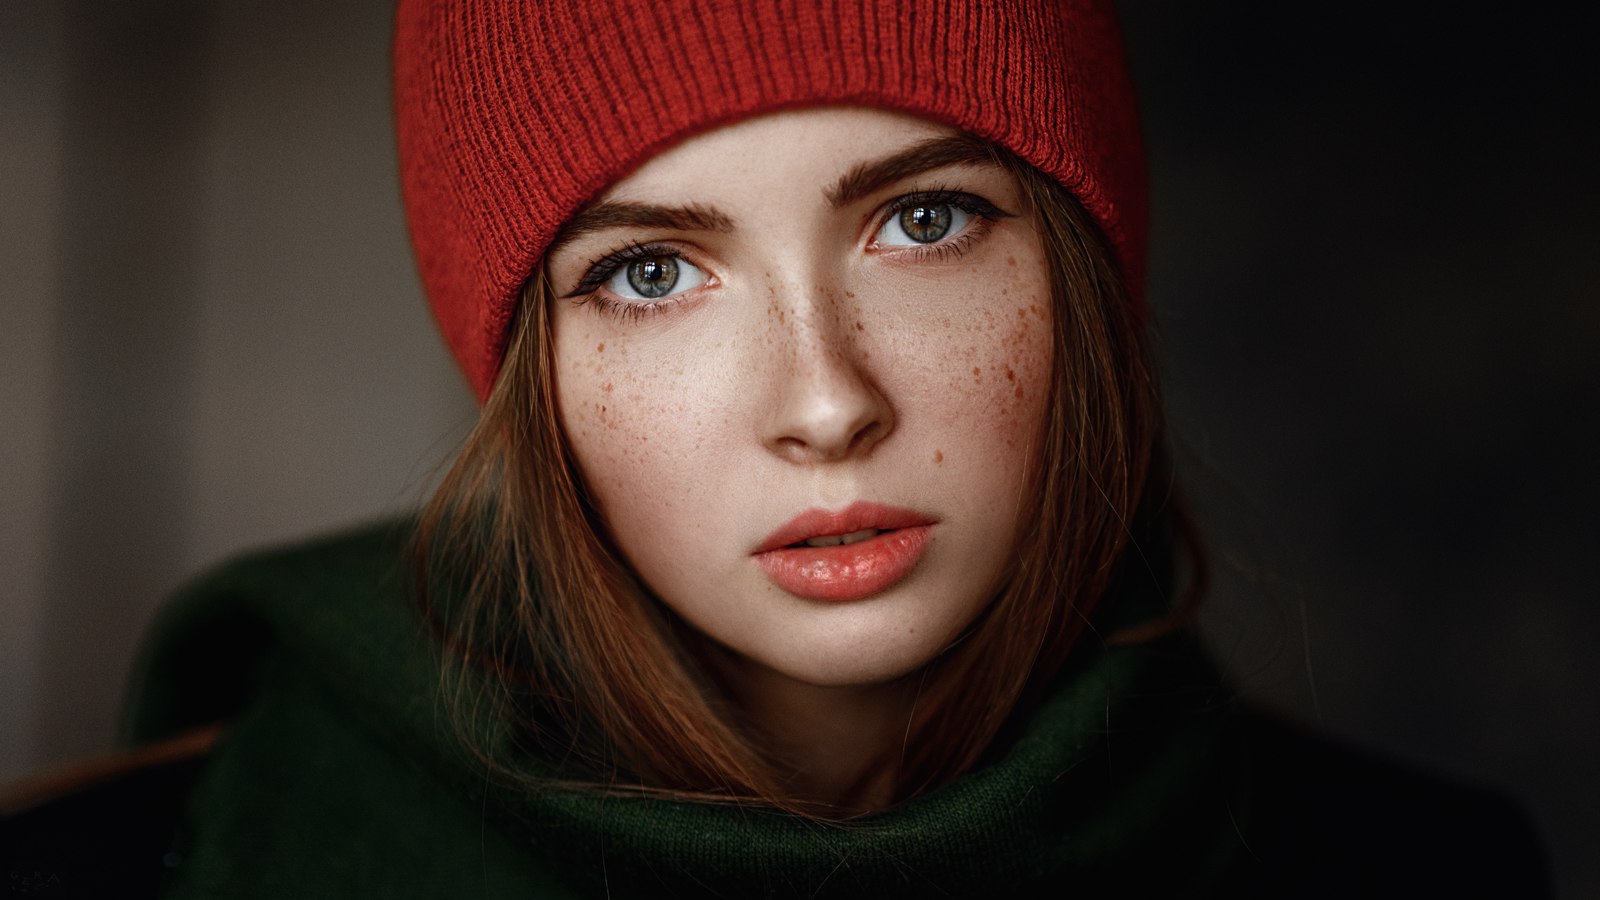 People 1600x900 Georgy Chernyadyev women face hat green redhead portrait freckles open mouth model